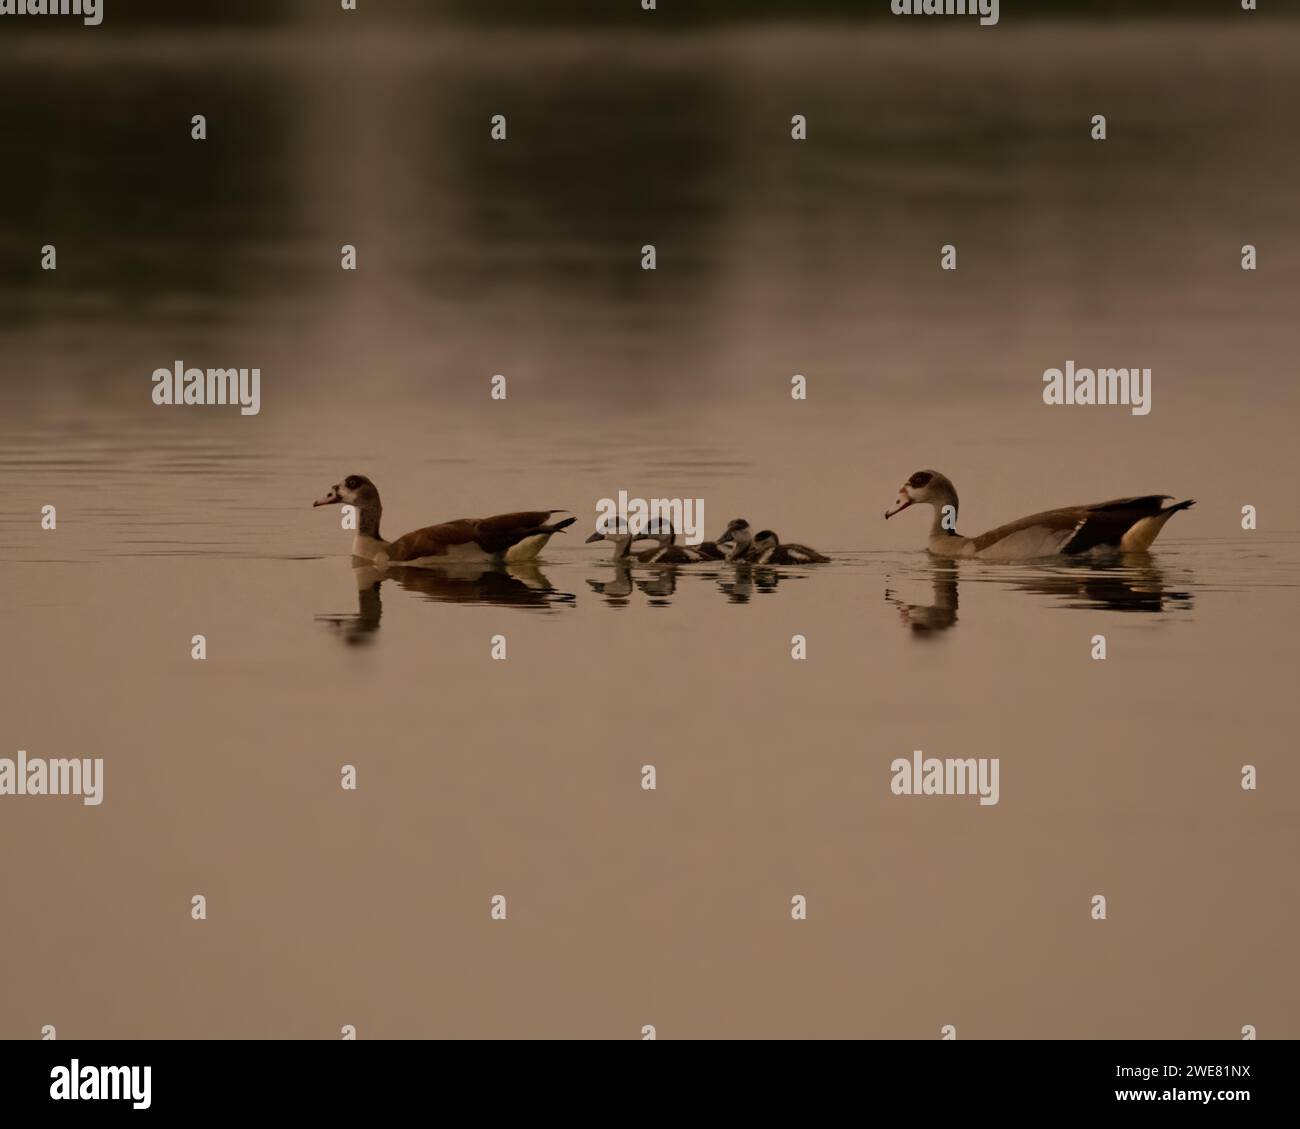 Familia de ganso egipcio (Alopochen aegyptiaca) con chismes nadando en el lago al atardecer en los lagos Al Qudra en Dubai, Emiratos Árabes Unidos. Foto de stock